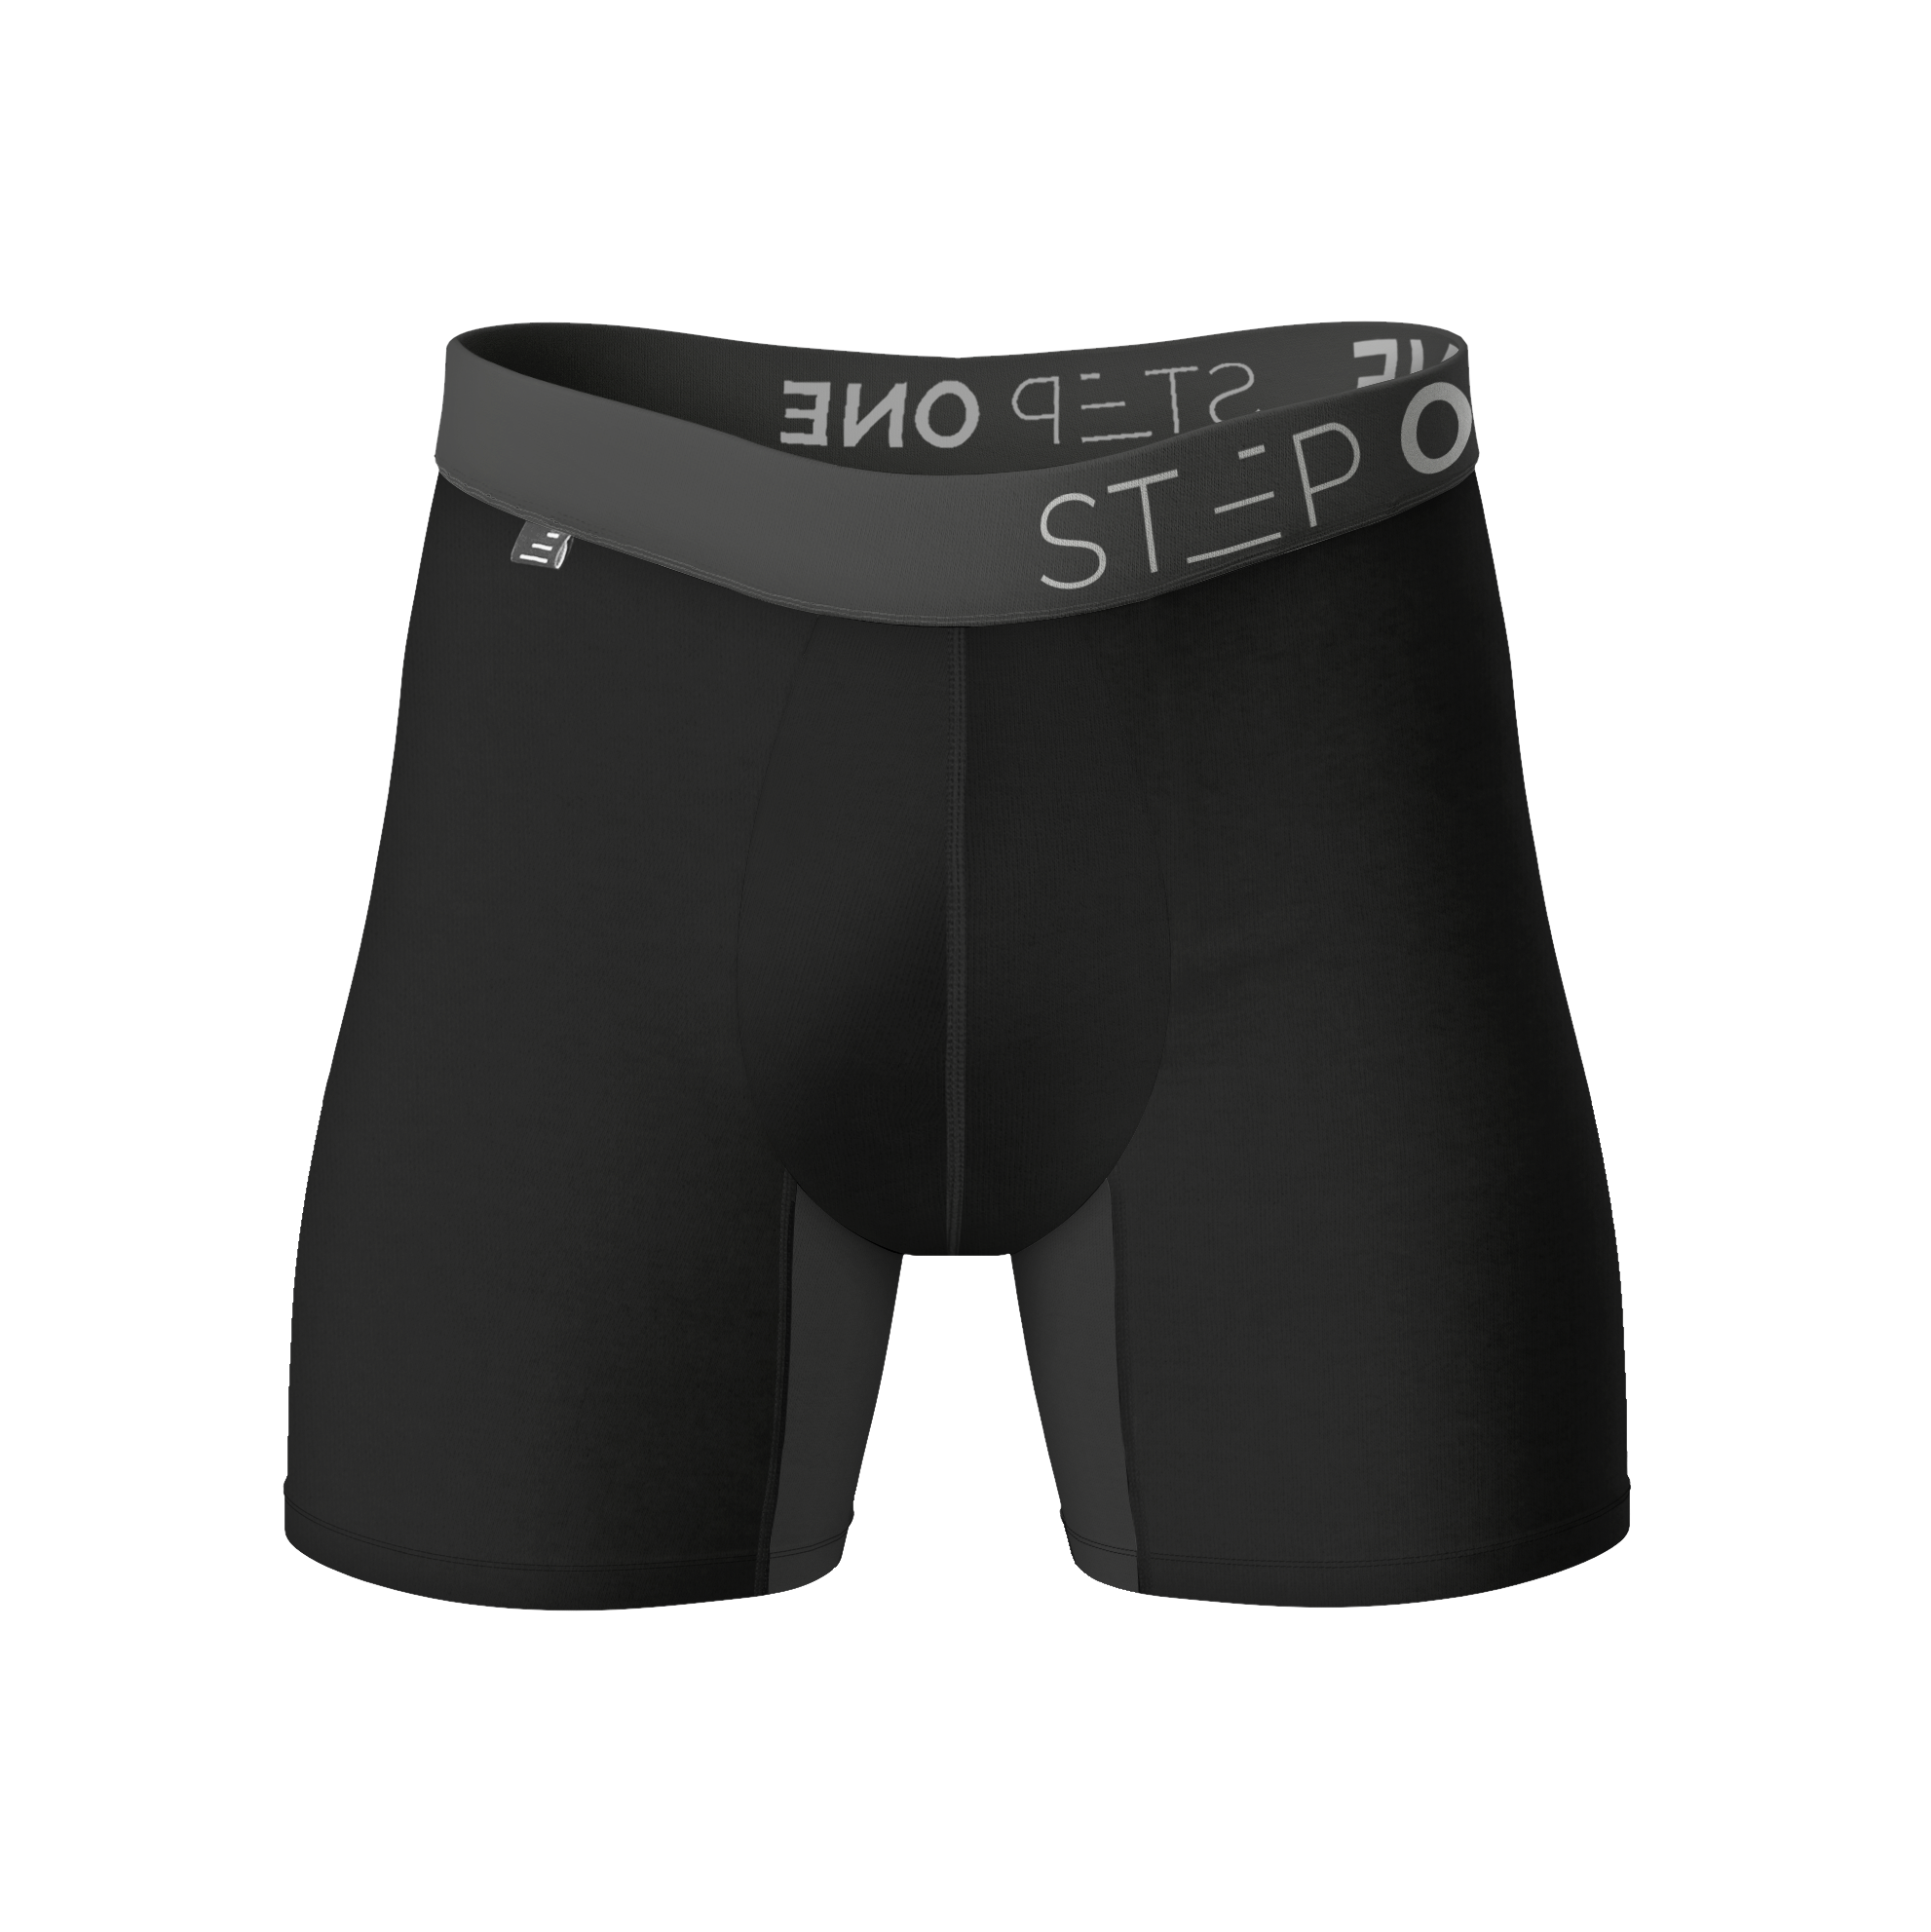 Bamboo Boxer Briefs, Pouch Underwear